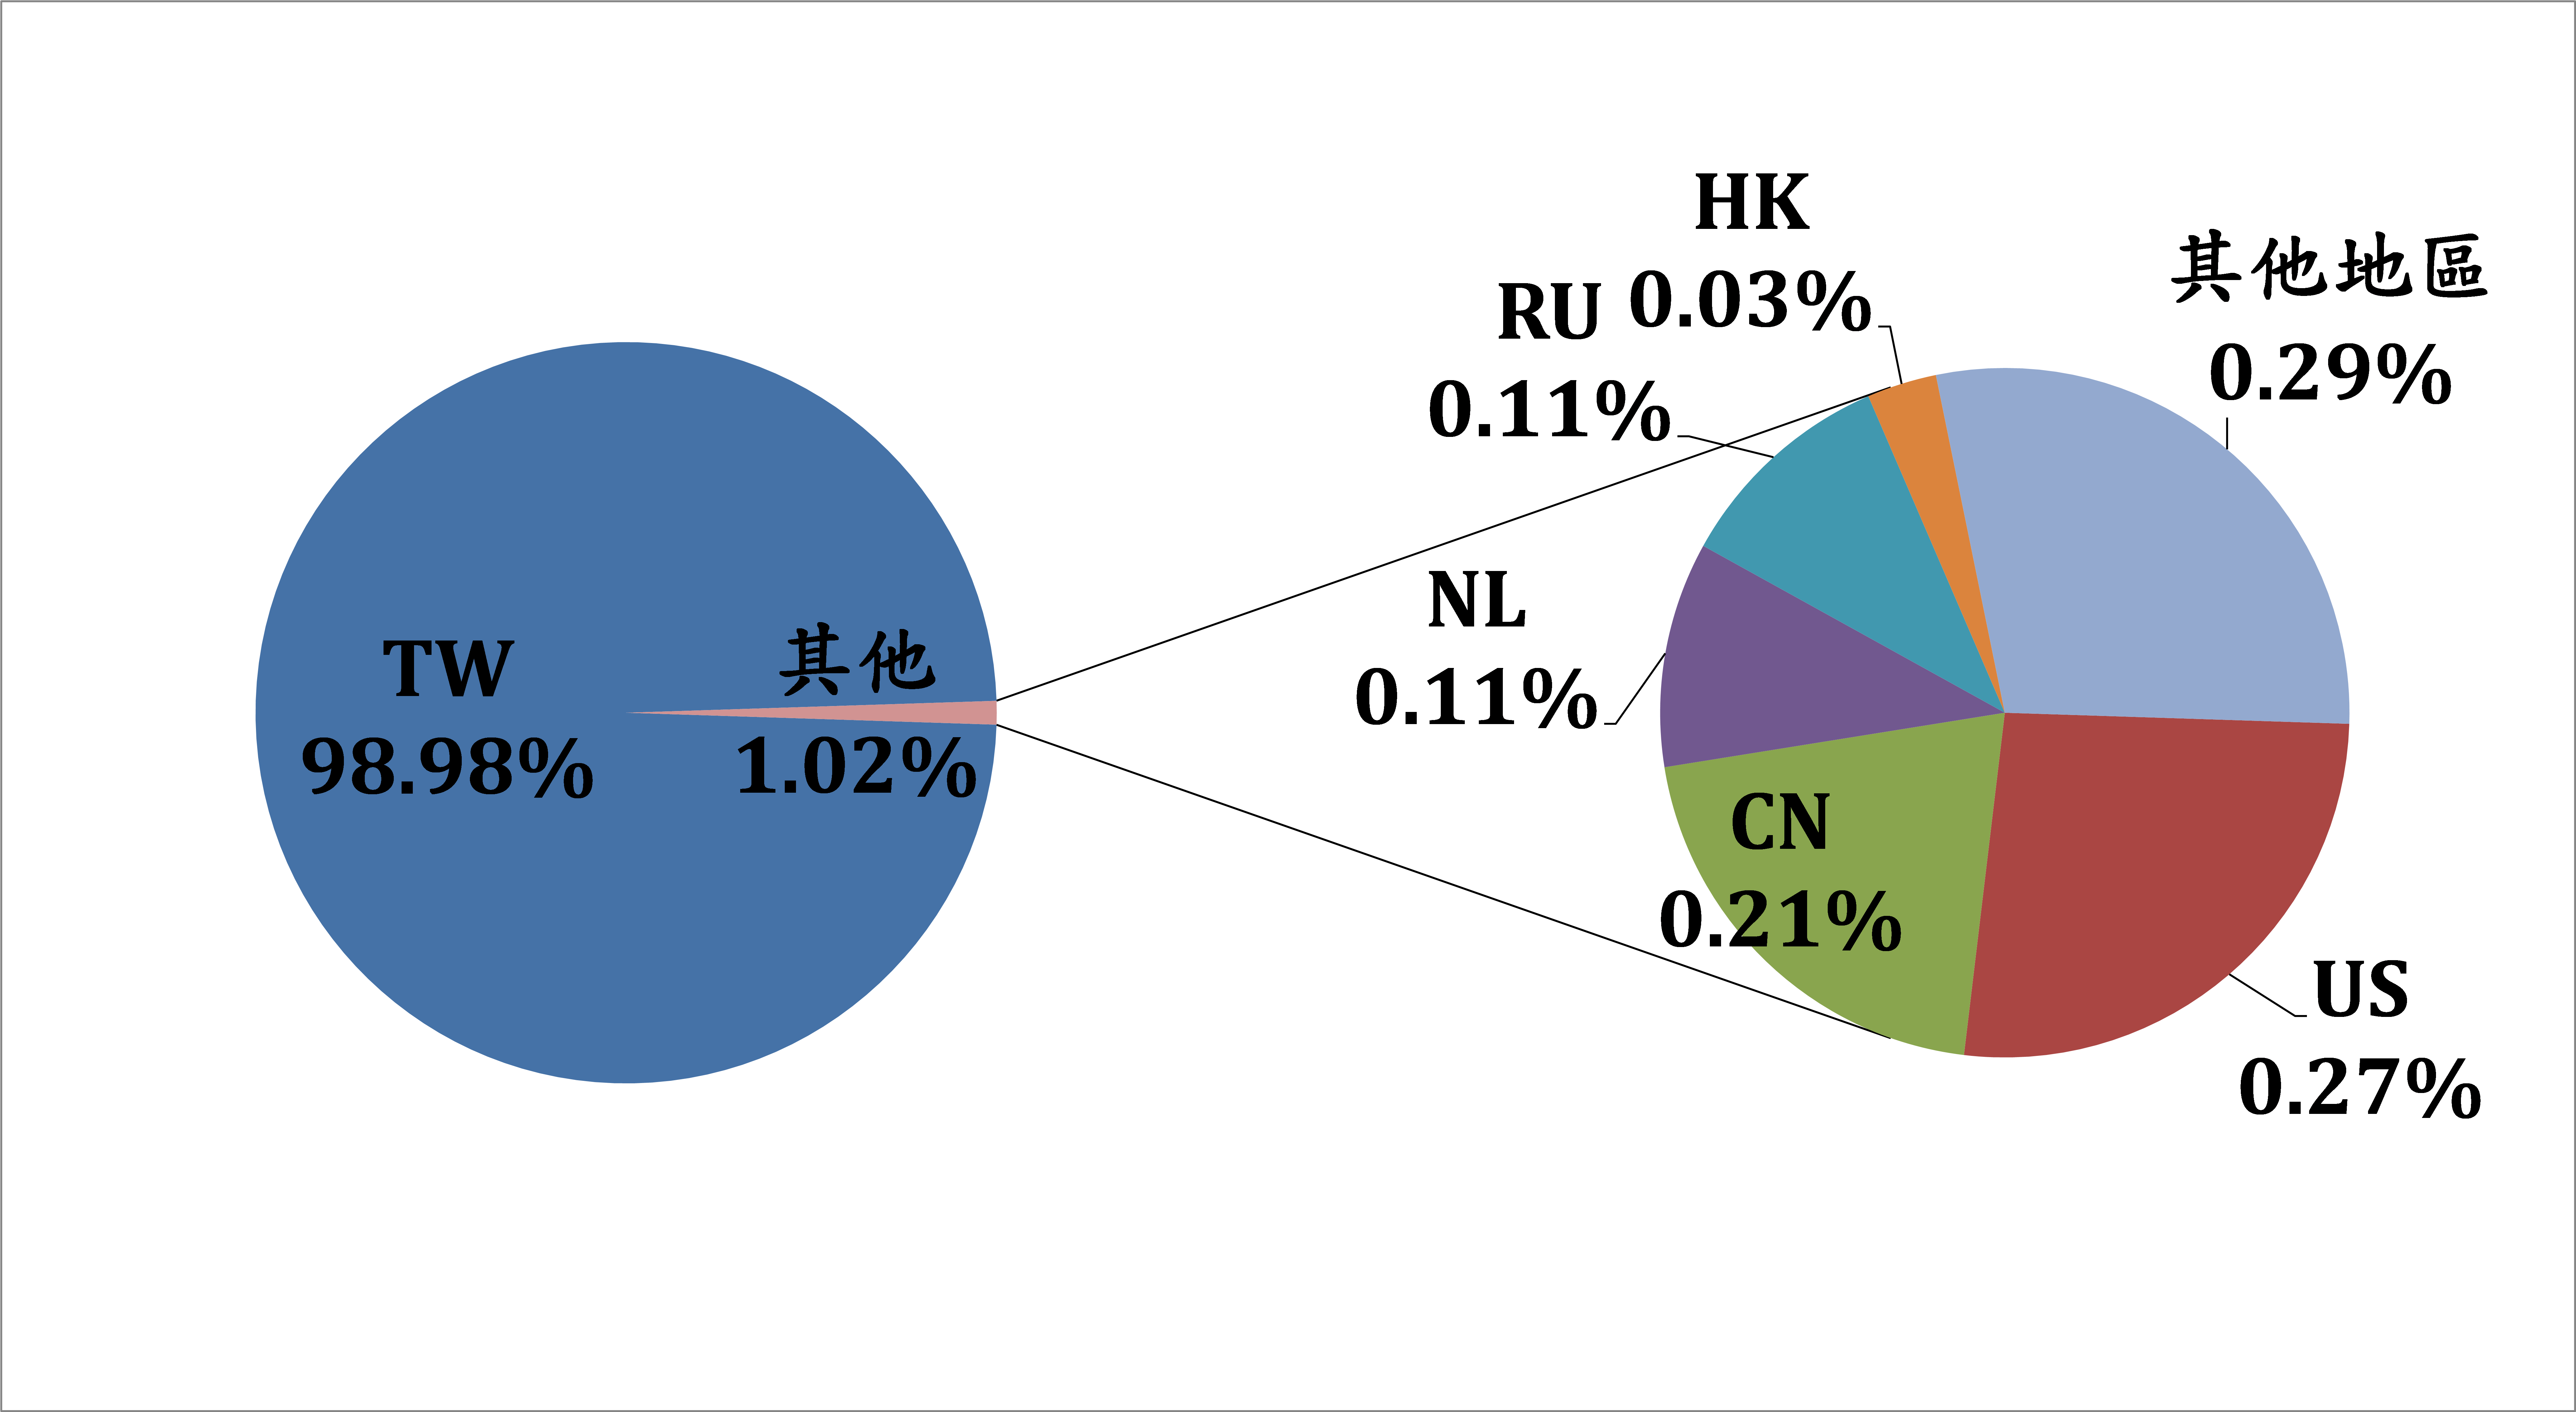 TW98.98% 其他1.02% US0.27% CN0.21% NL0.11% RU0.11% HK0.03% 其他地區0.29%